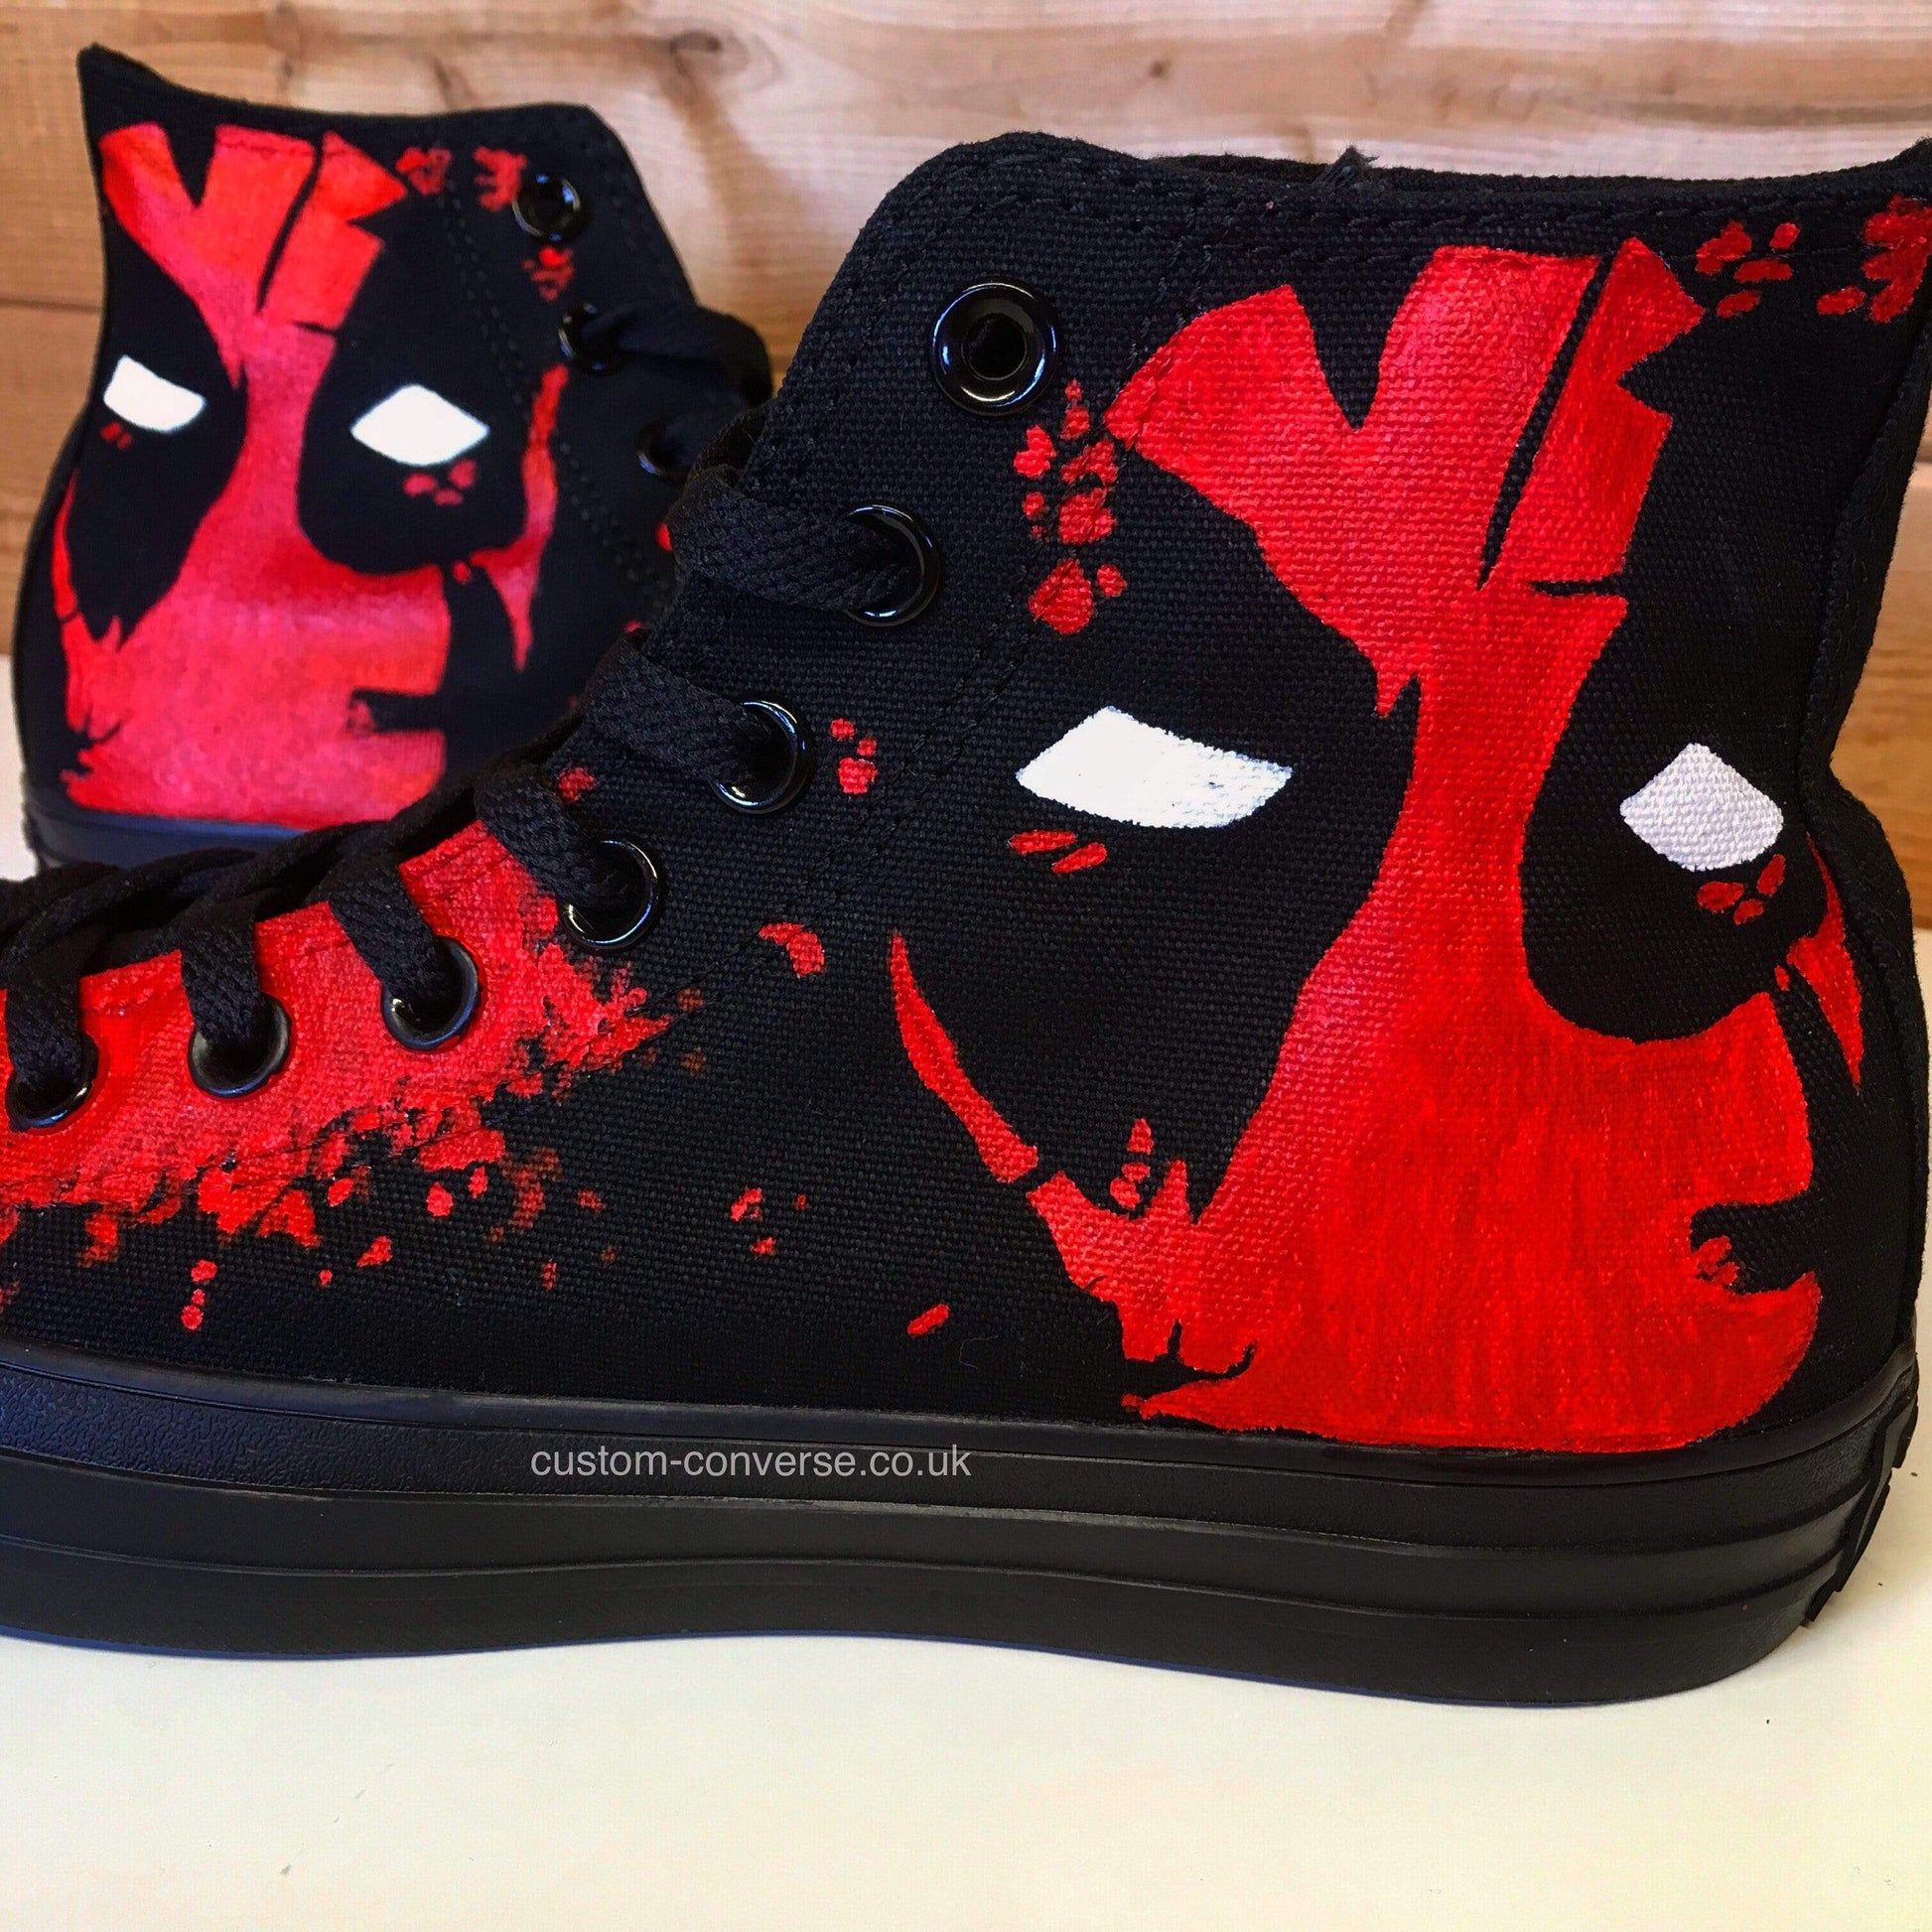 Deadpool - Custom Converse Ltd.